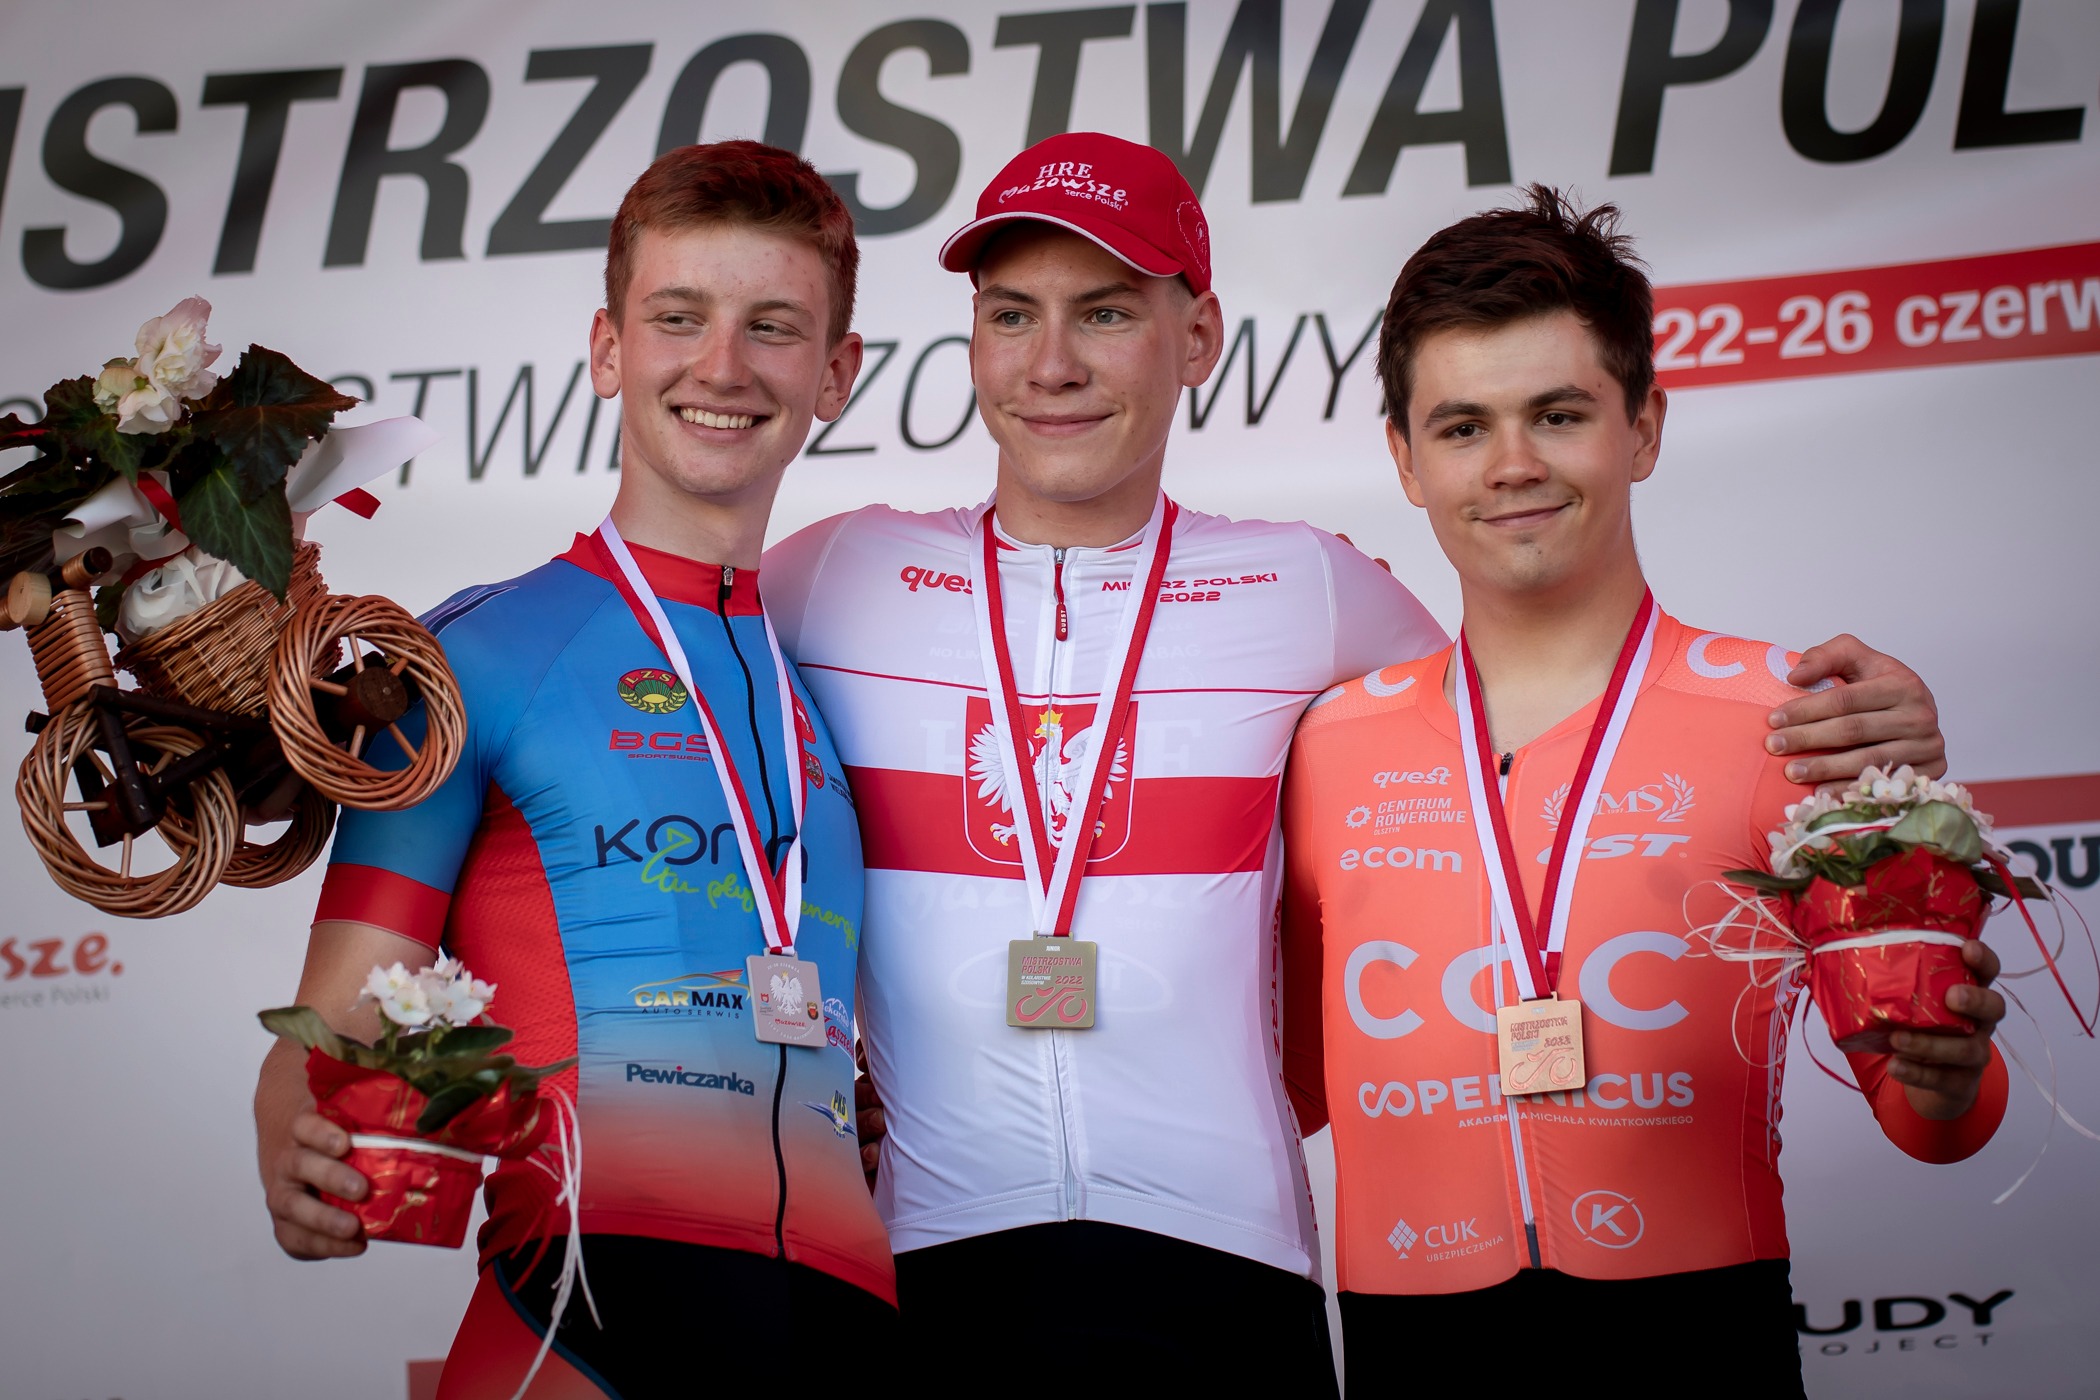 Mistrzostwa Polski 2022. Marek Kapela mistrzem Polski w jeździe na czas juniorów